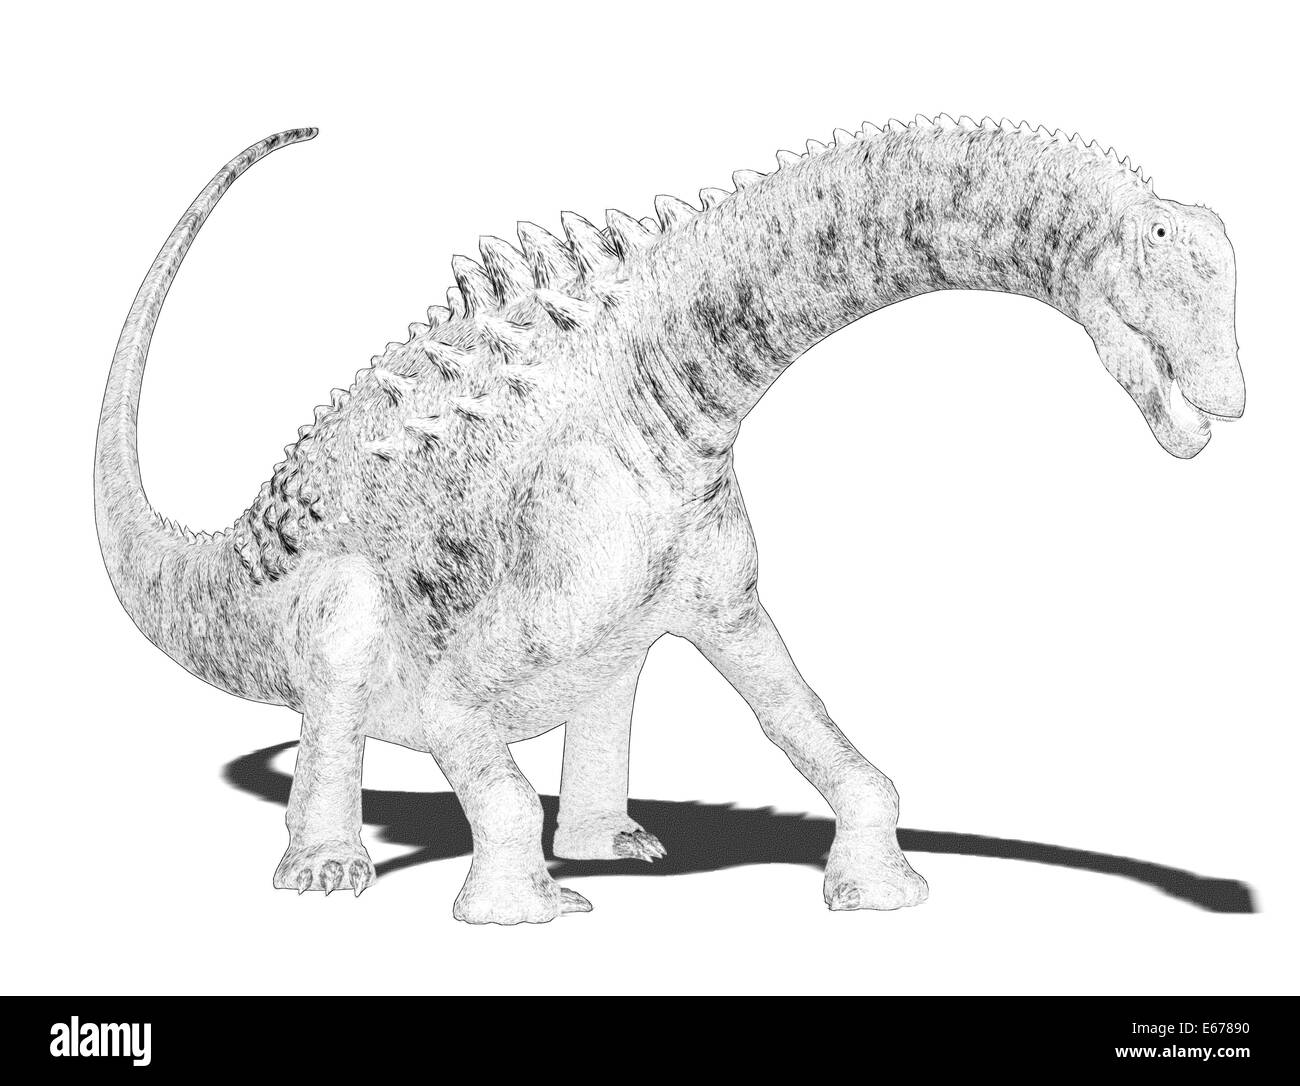 Dinosaurier Ampelosaurus / dinosaur Ampelosaurus Stock Photo